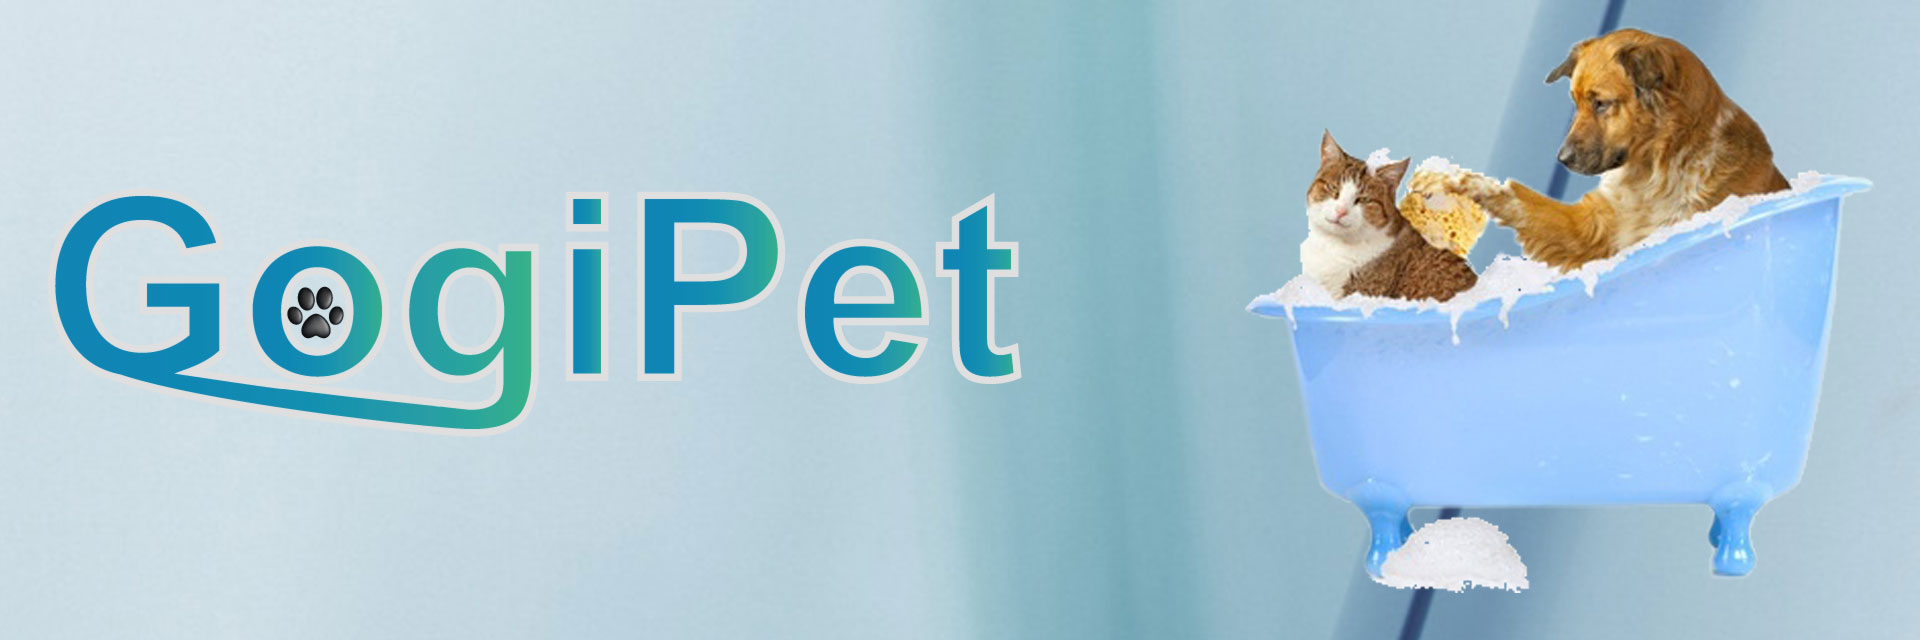 Professionelle Hundeshampoos für Hundefriseure und anspruchsvolle Heimanwender